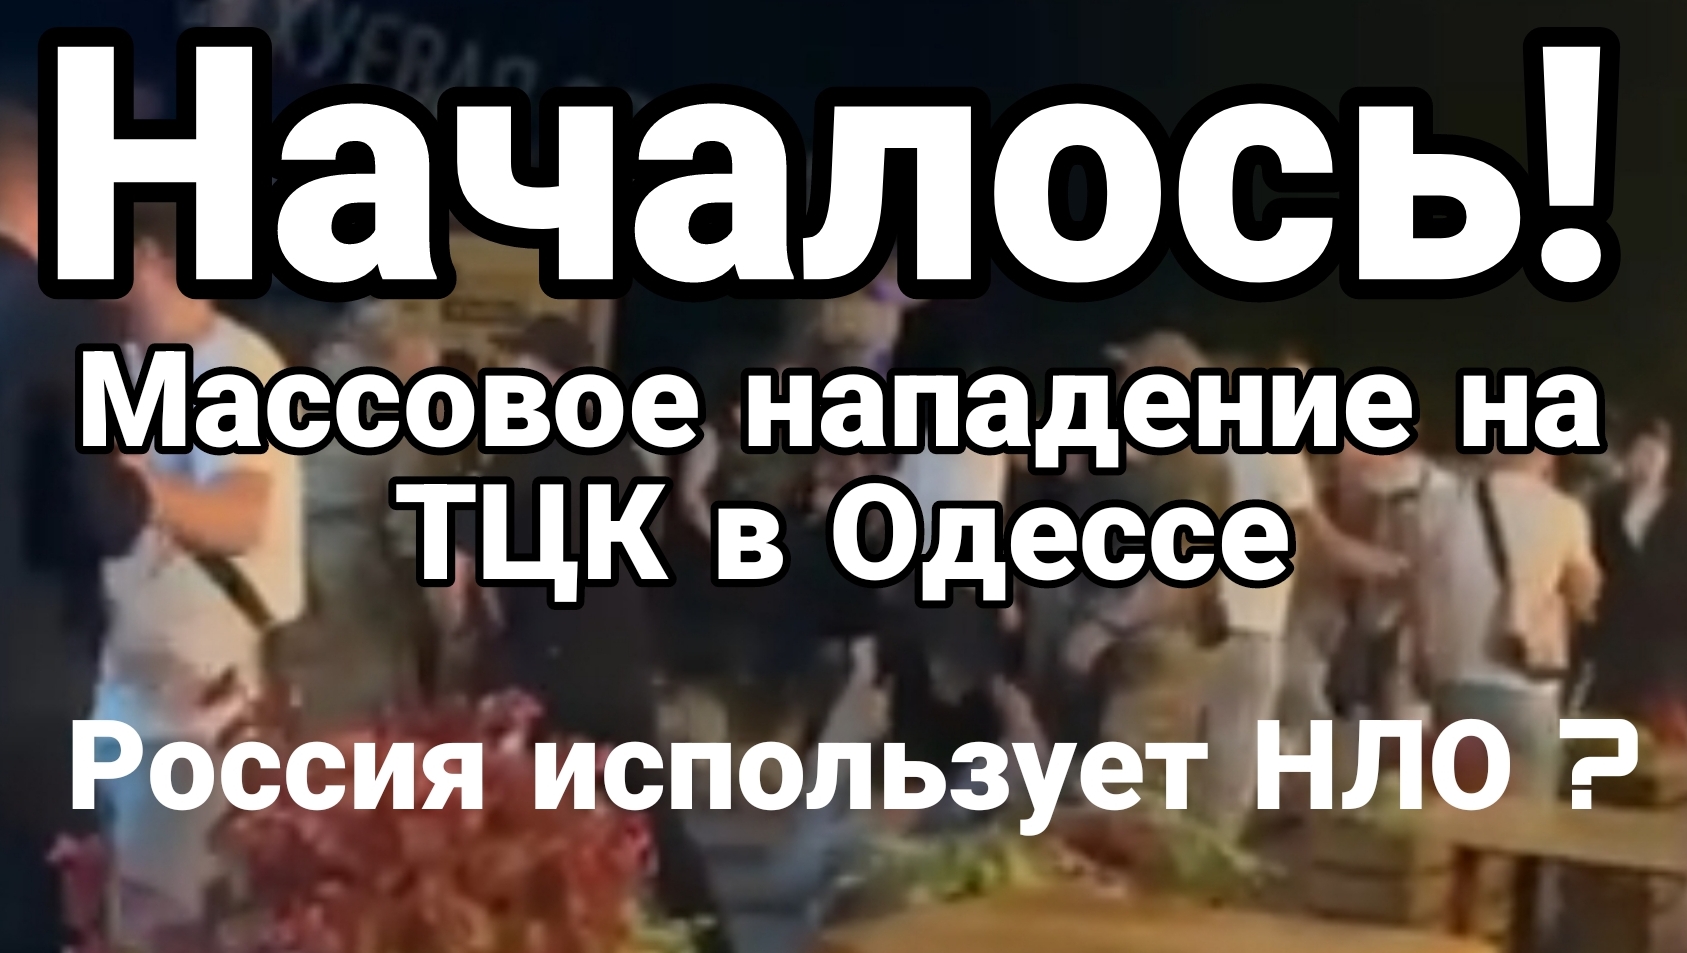 Началось! Массовое нападение на ТЦК в Одессе Россия использует НЛО ?